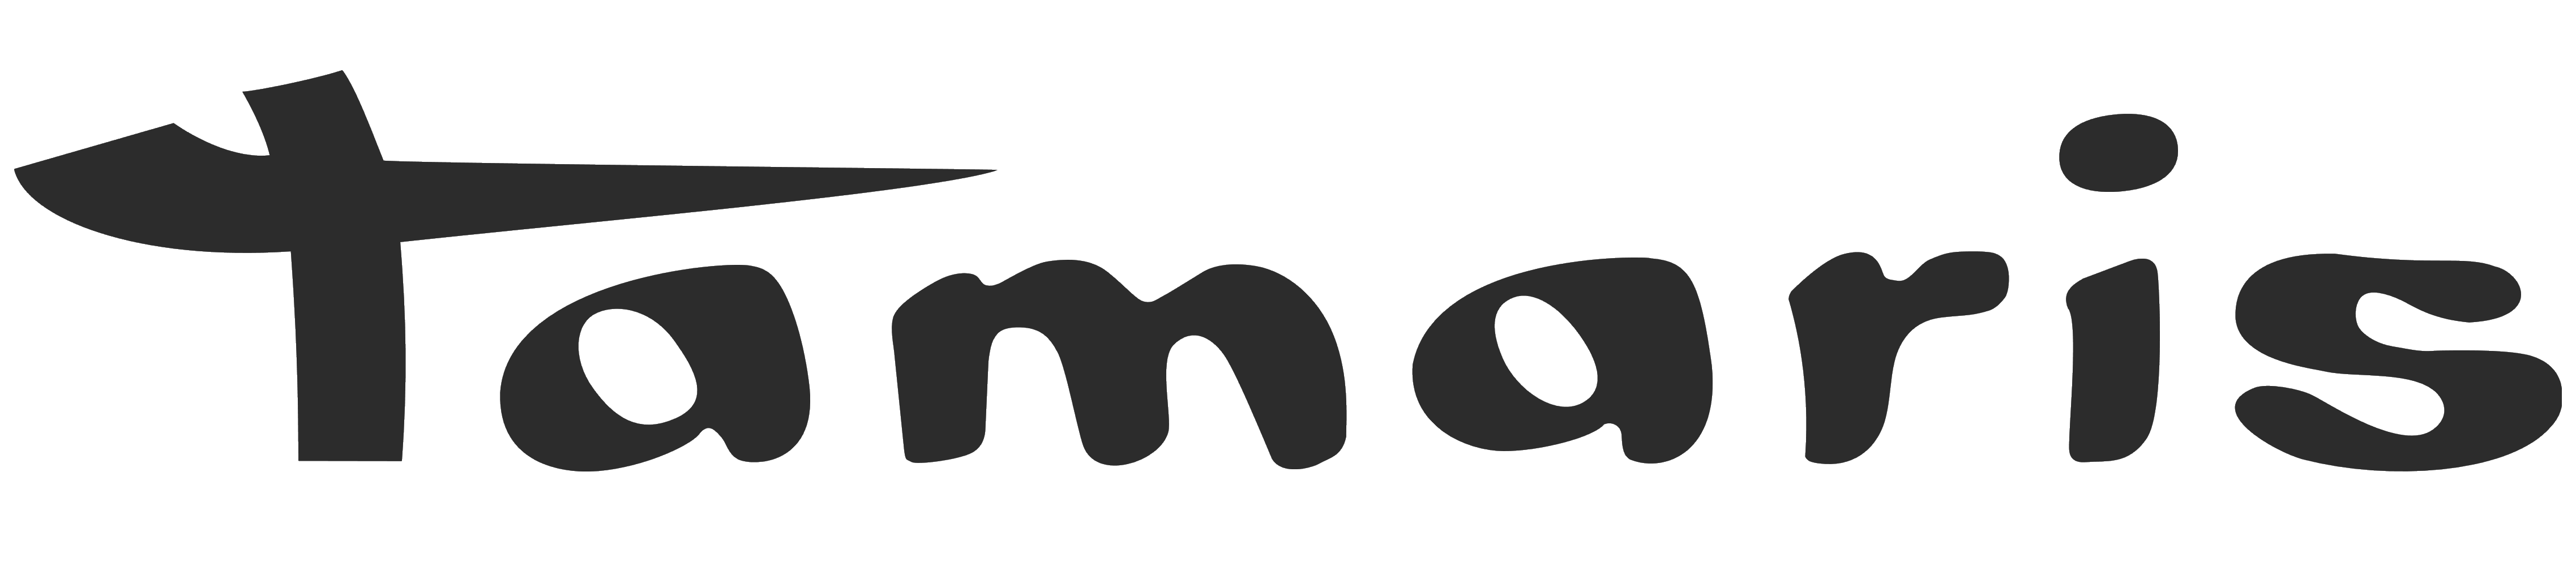 Tamaris_logo